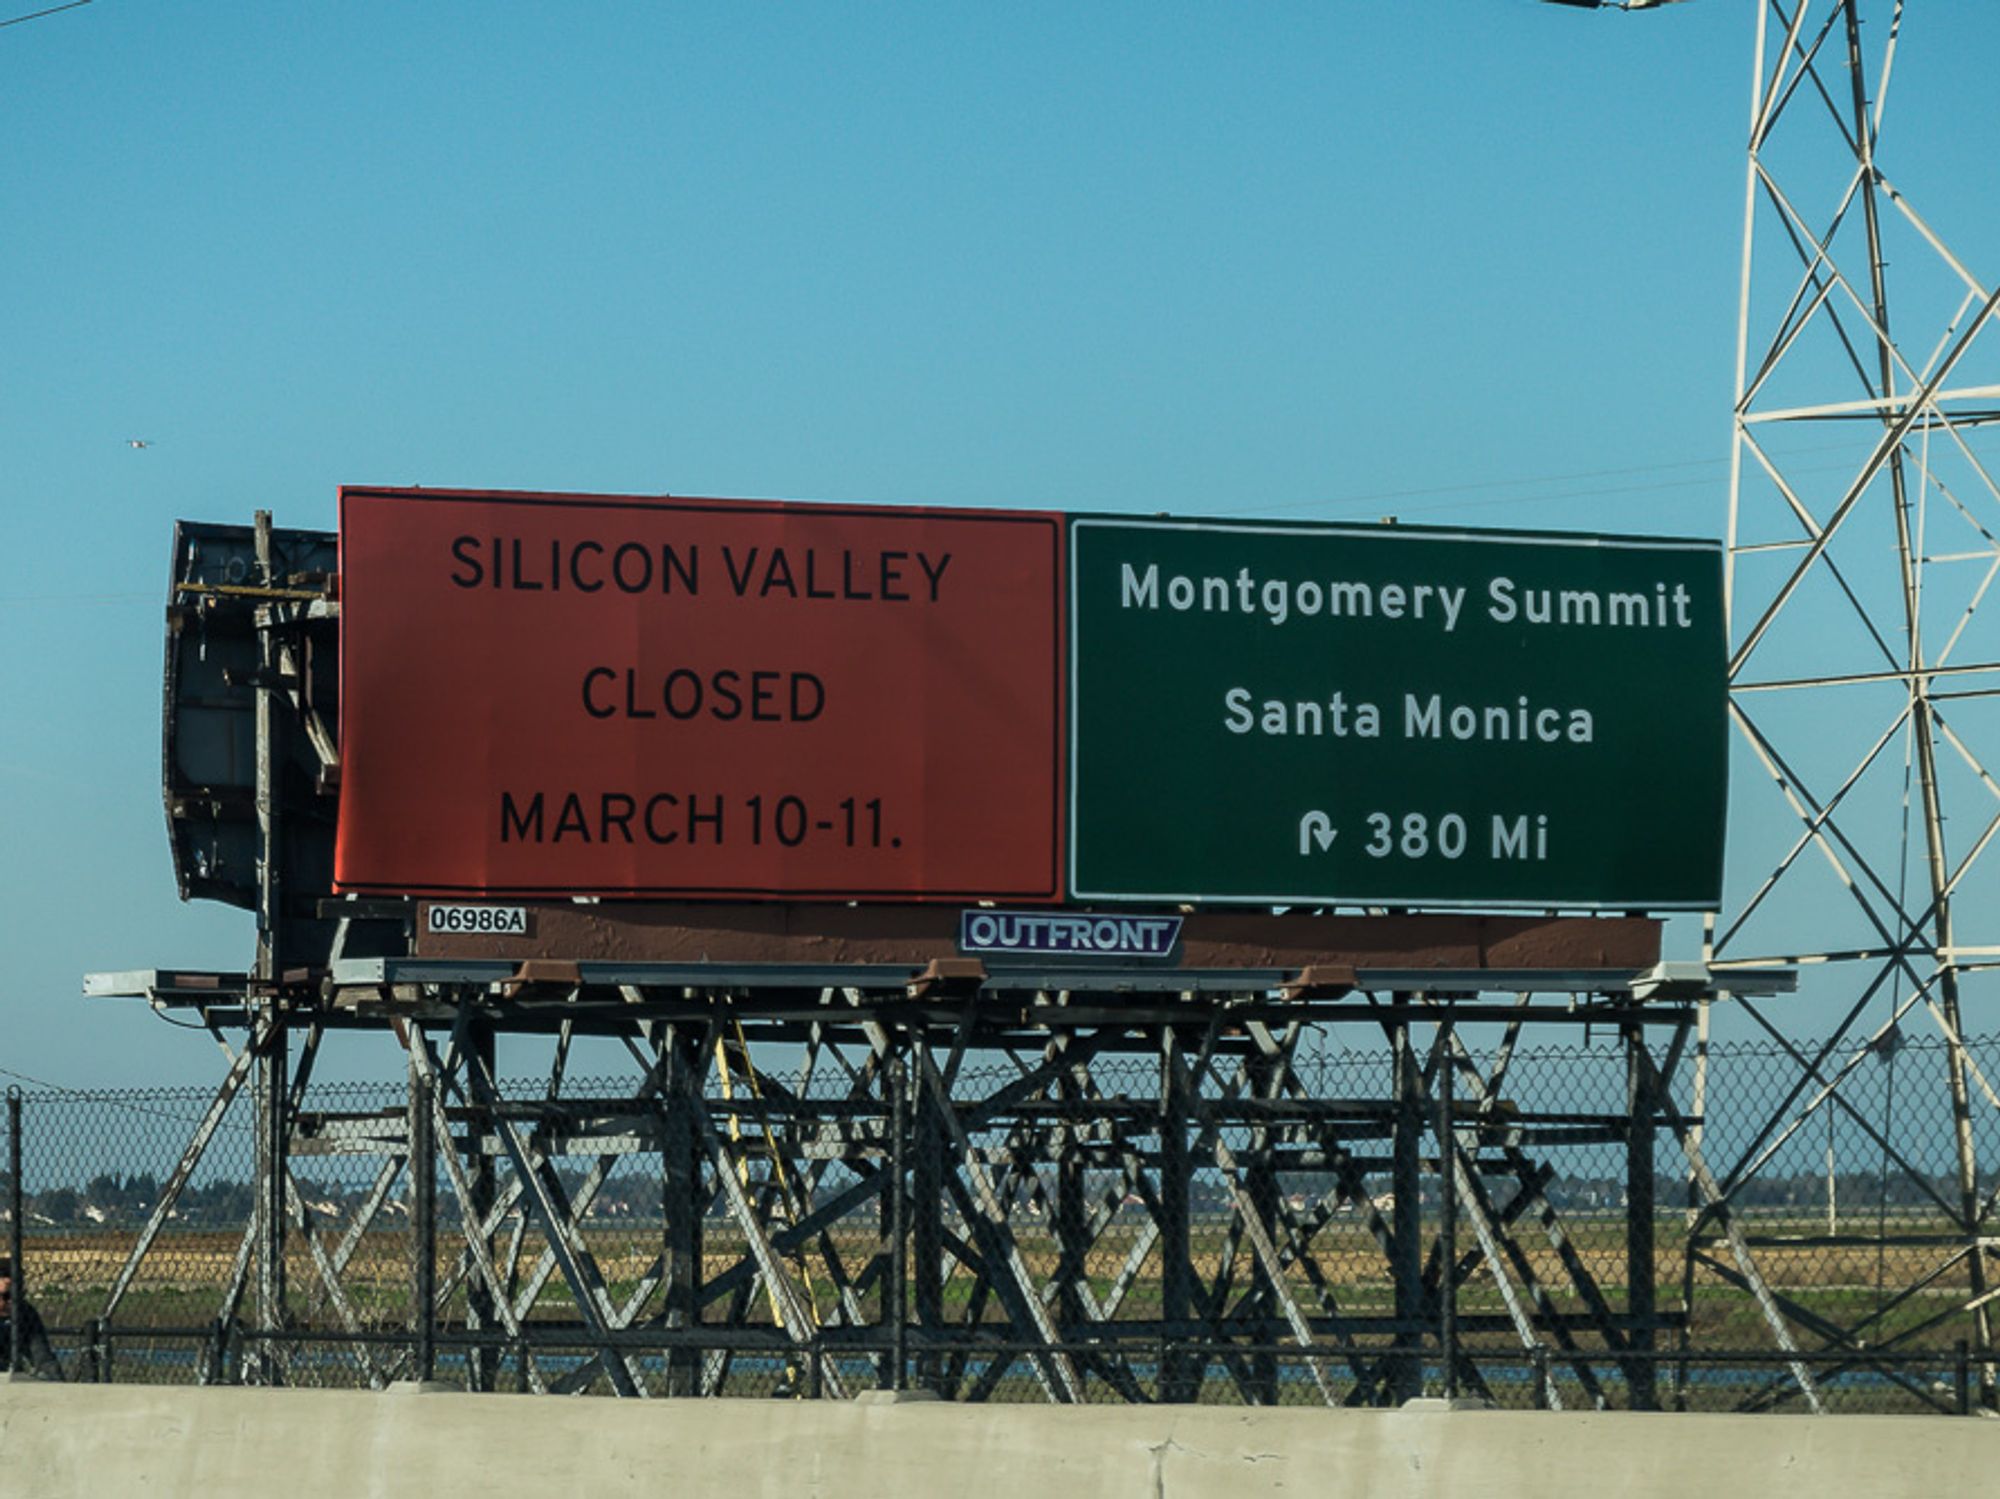 Santa Monica, Meet Melbourne: The Montgomery Summit Goes Down Under